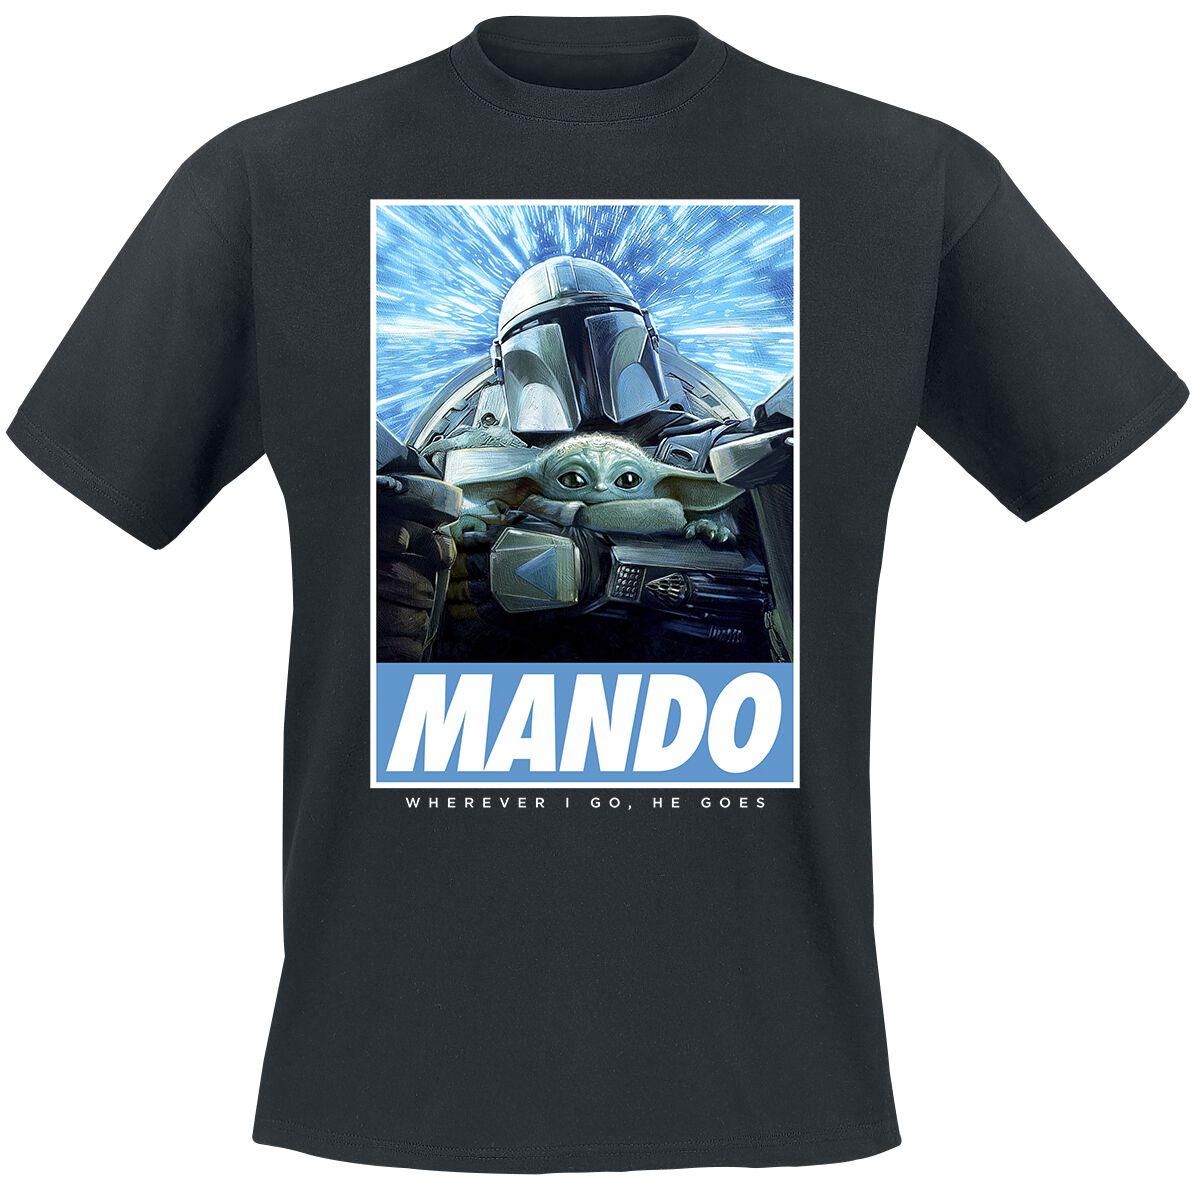 Star Wars T-Shirt - The Mandalorian - Season 3 - Wherever I Go - S bis 4XL - für Männer - Größe S - schwarz  - Lizenzierter Fanartikel